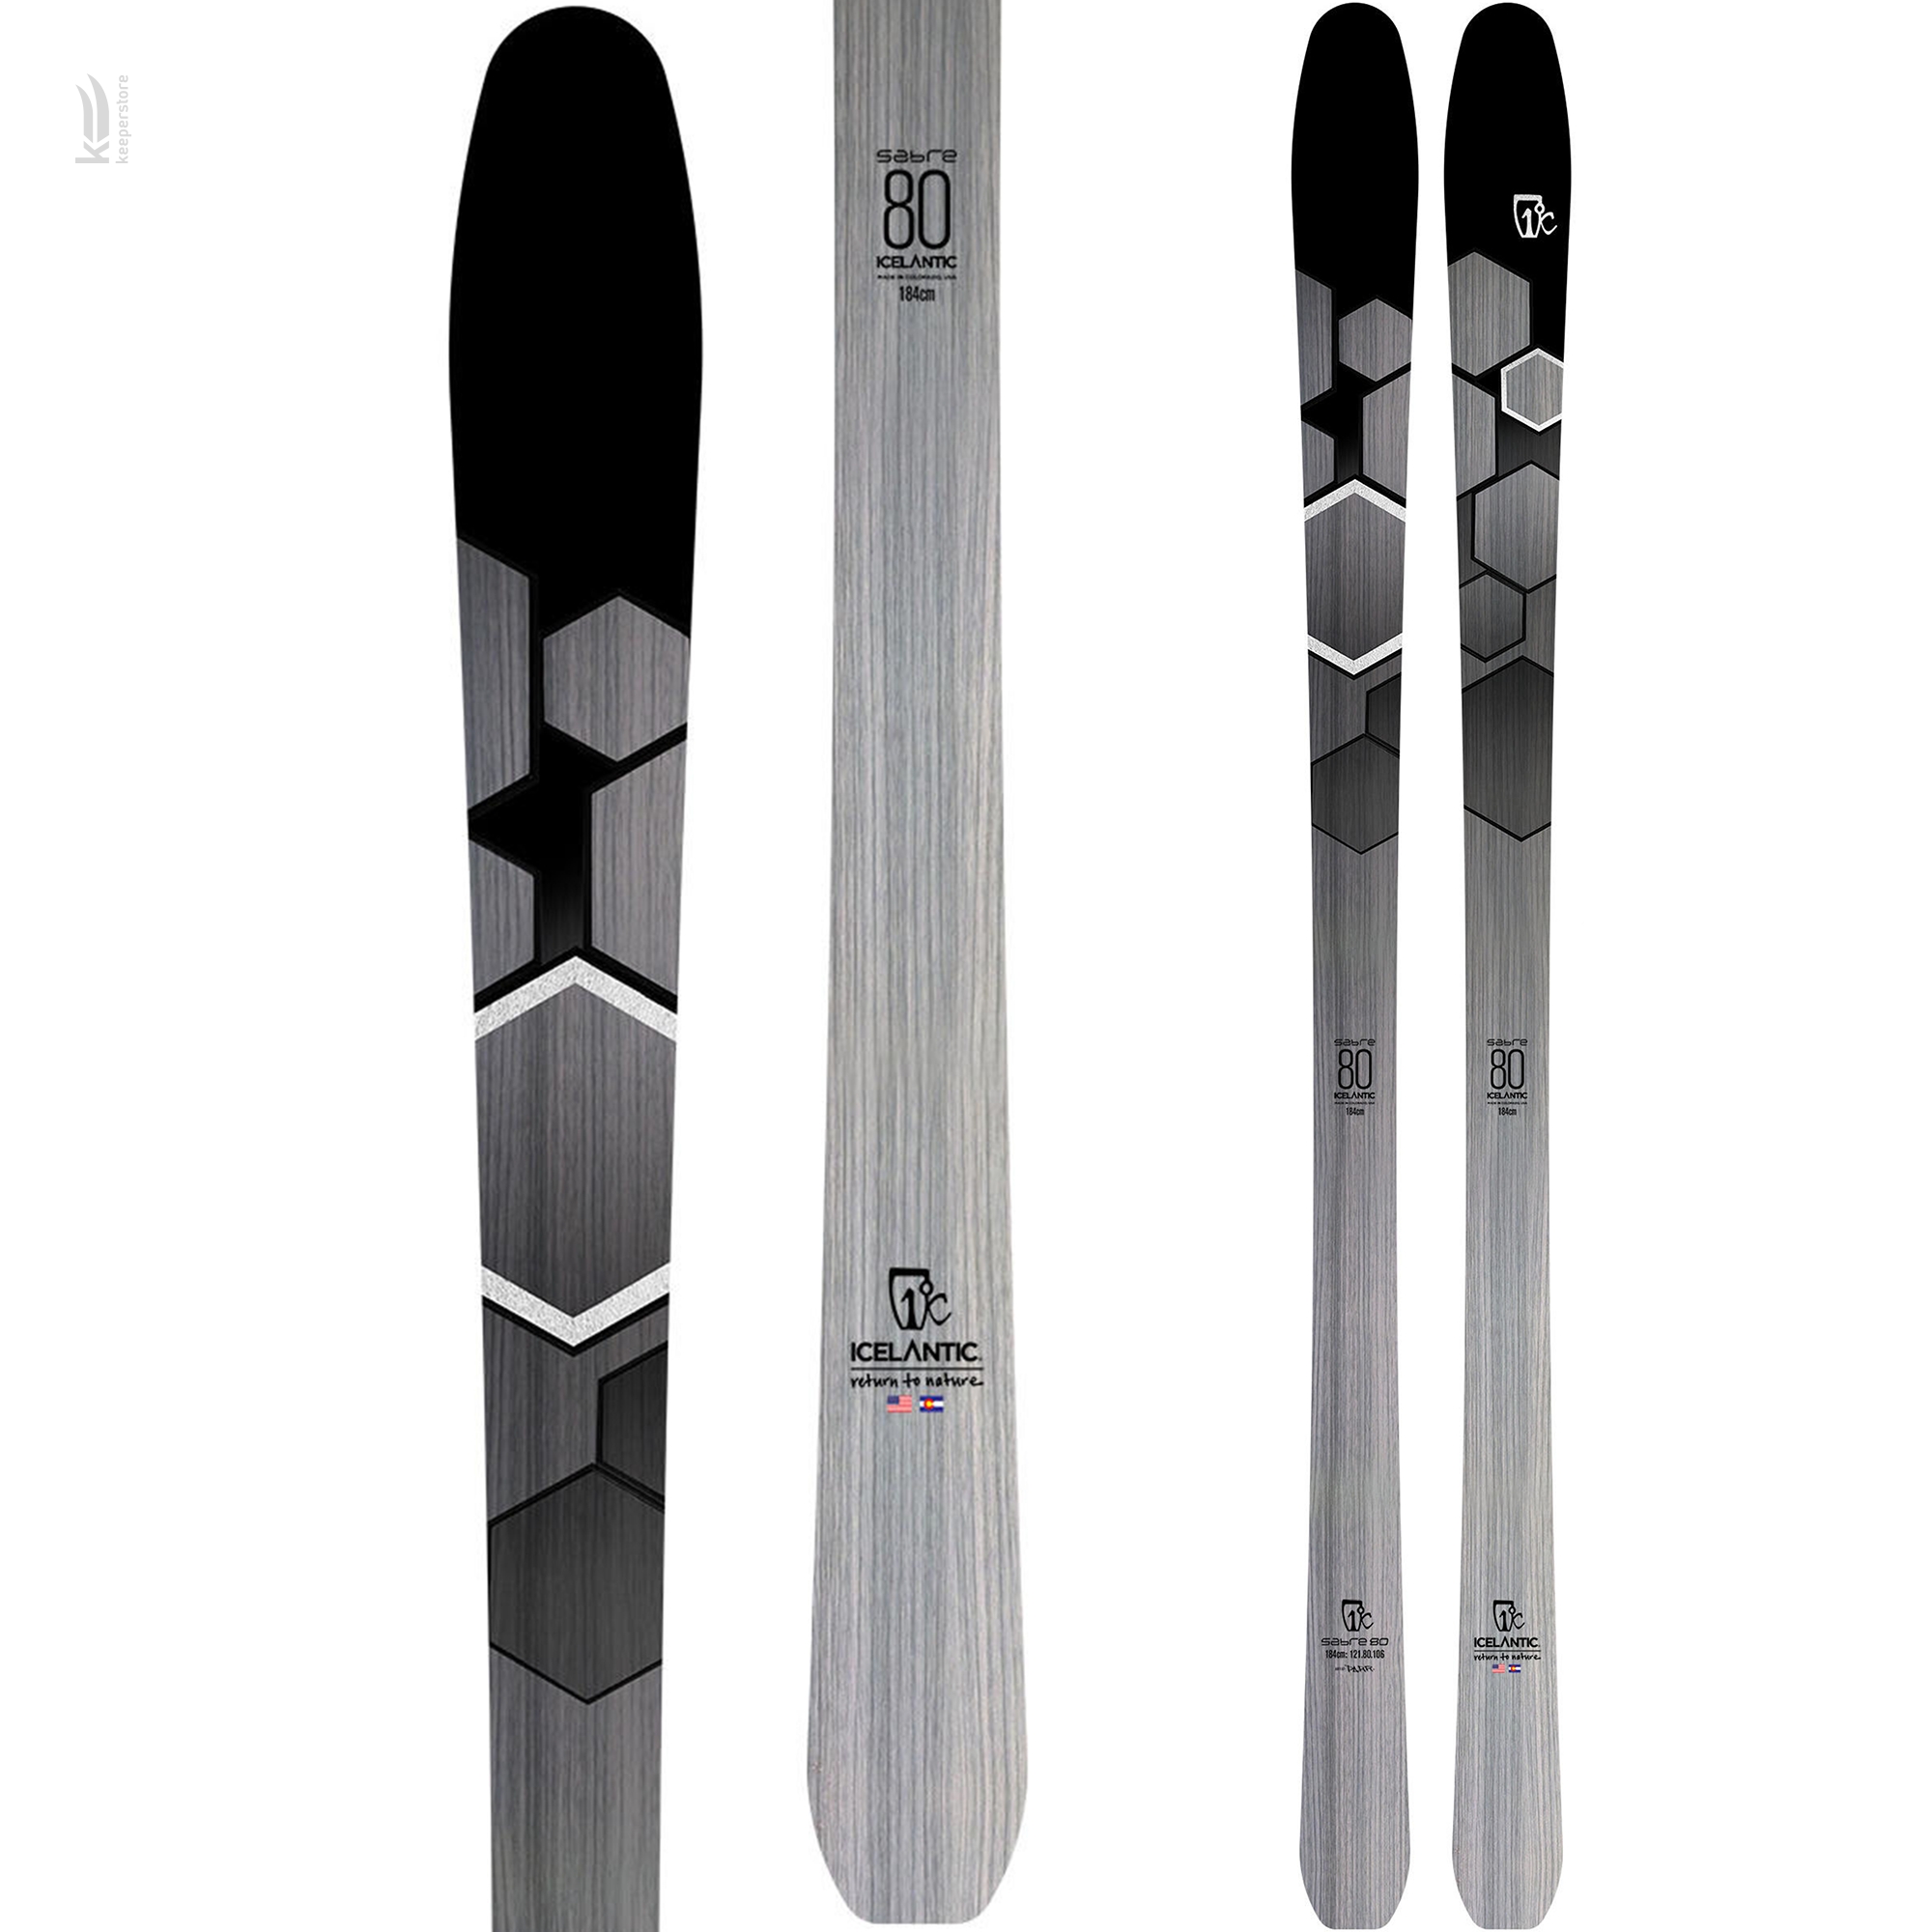 Горные лыжи Icelantic Sabre 80 2019/2020 174cm купить в Киеве